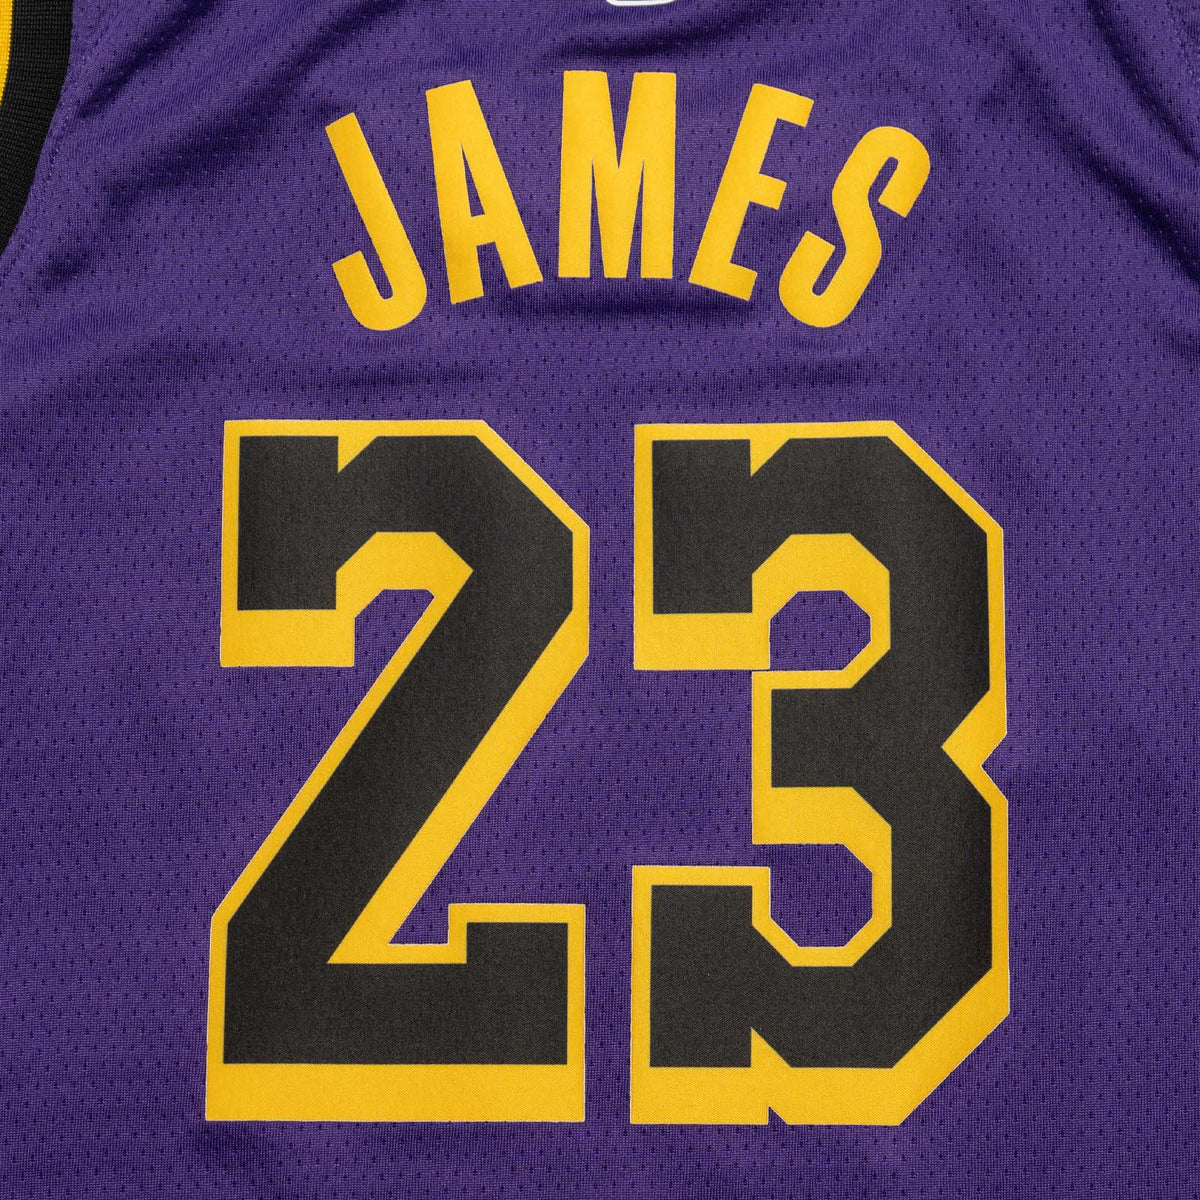 Jordan Boys LeBron James Lakers Statement Swingman Jersey - Purple Size XL